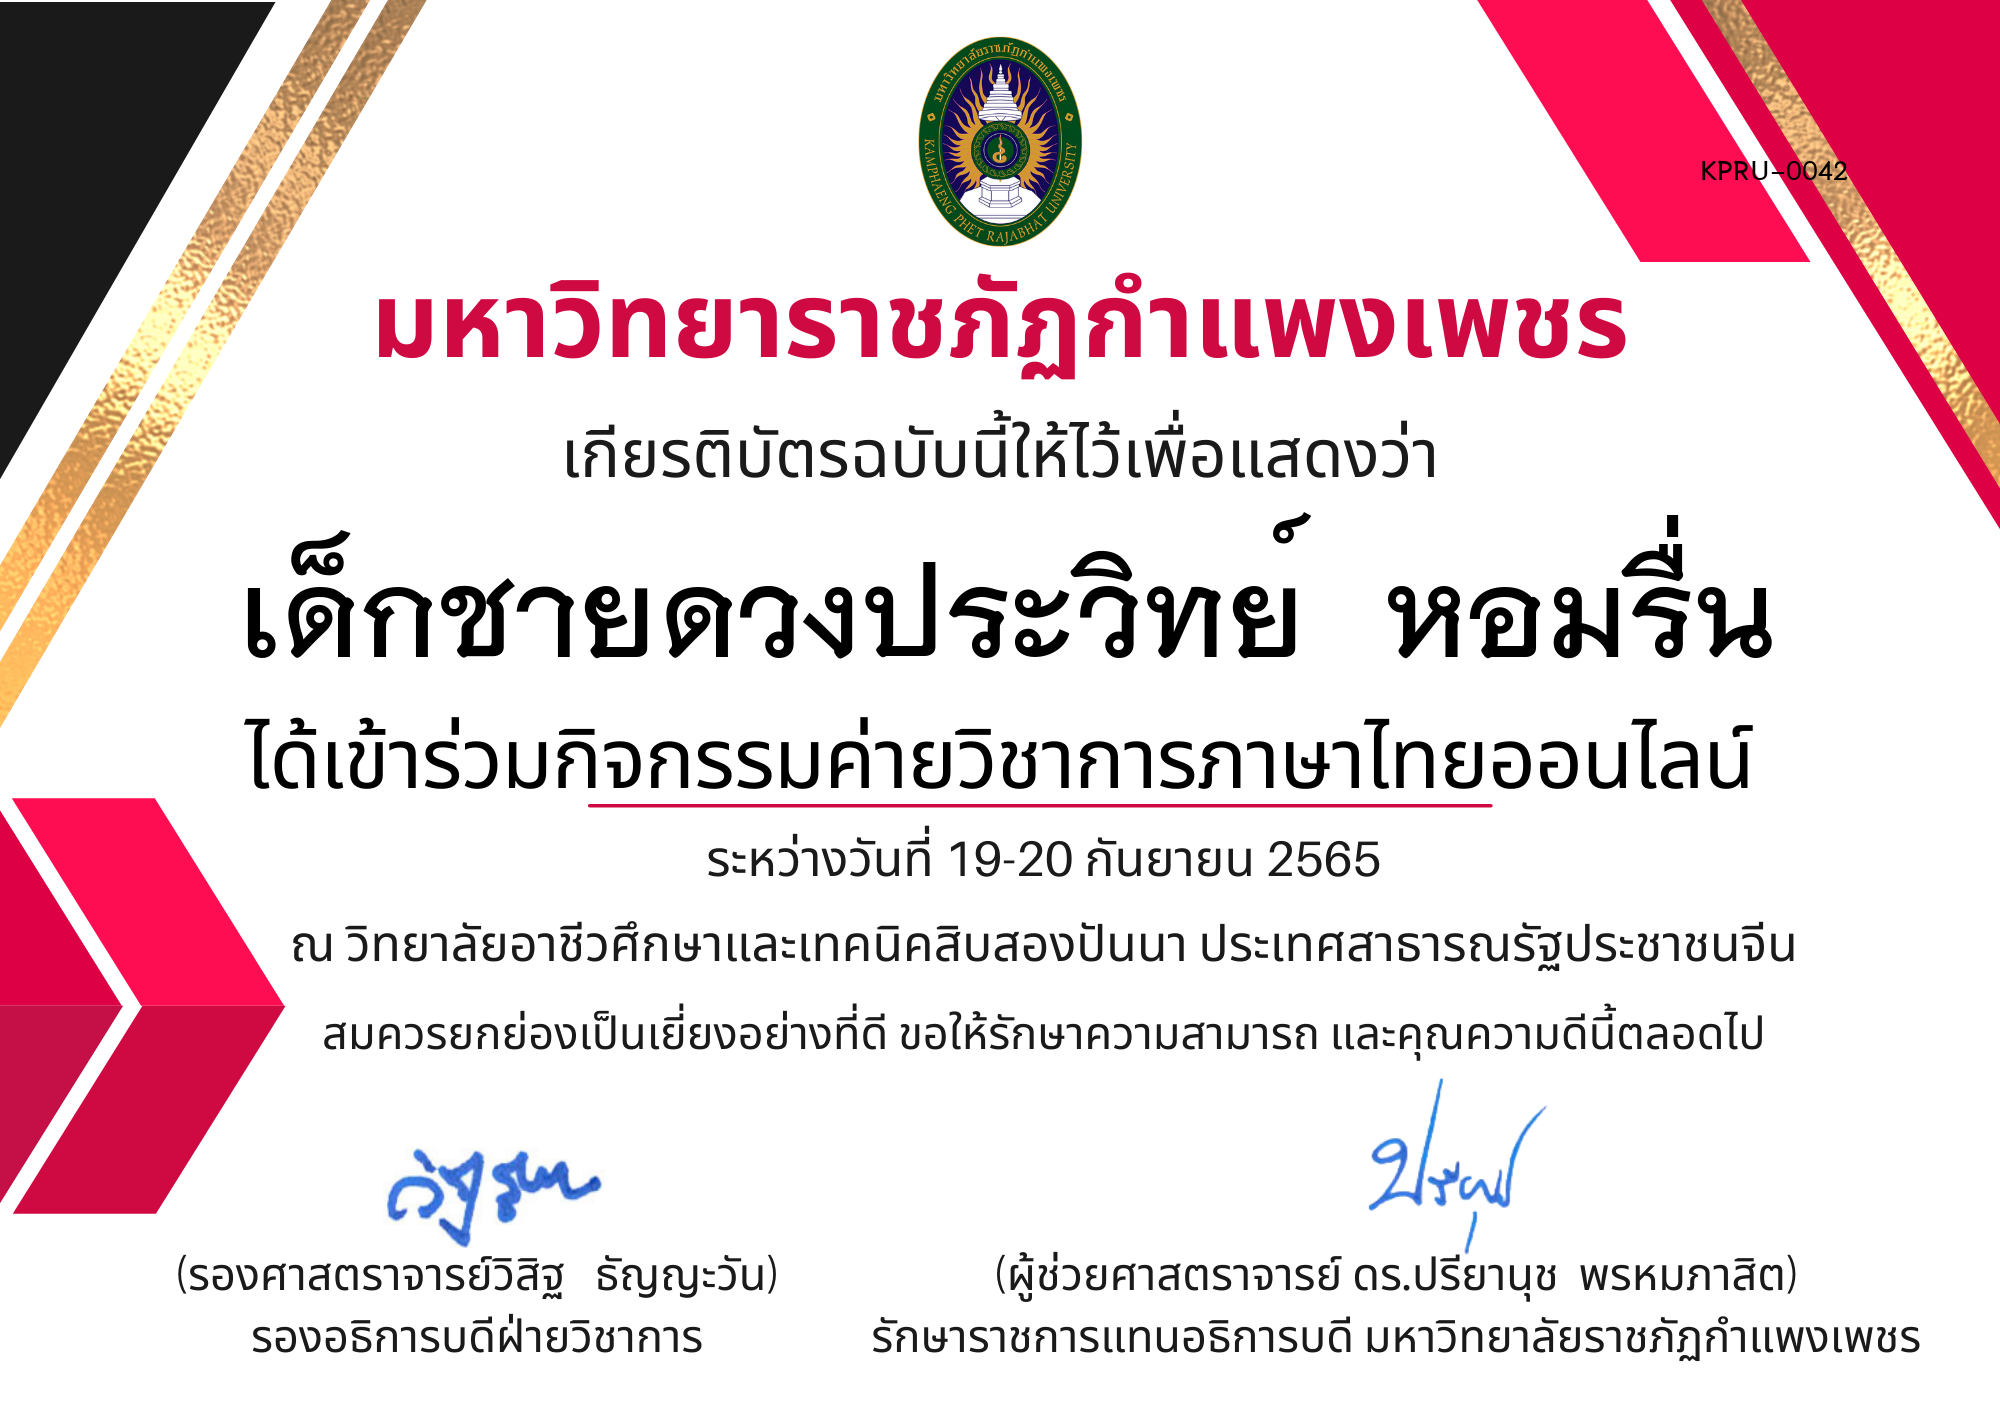 เกียรติบัตร กิจกรรมค่ายวิชาการภาษาไทยออนไลน์ ของ เด็กชายดวงประวิทย์  หอมรื่น